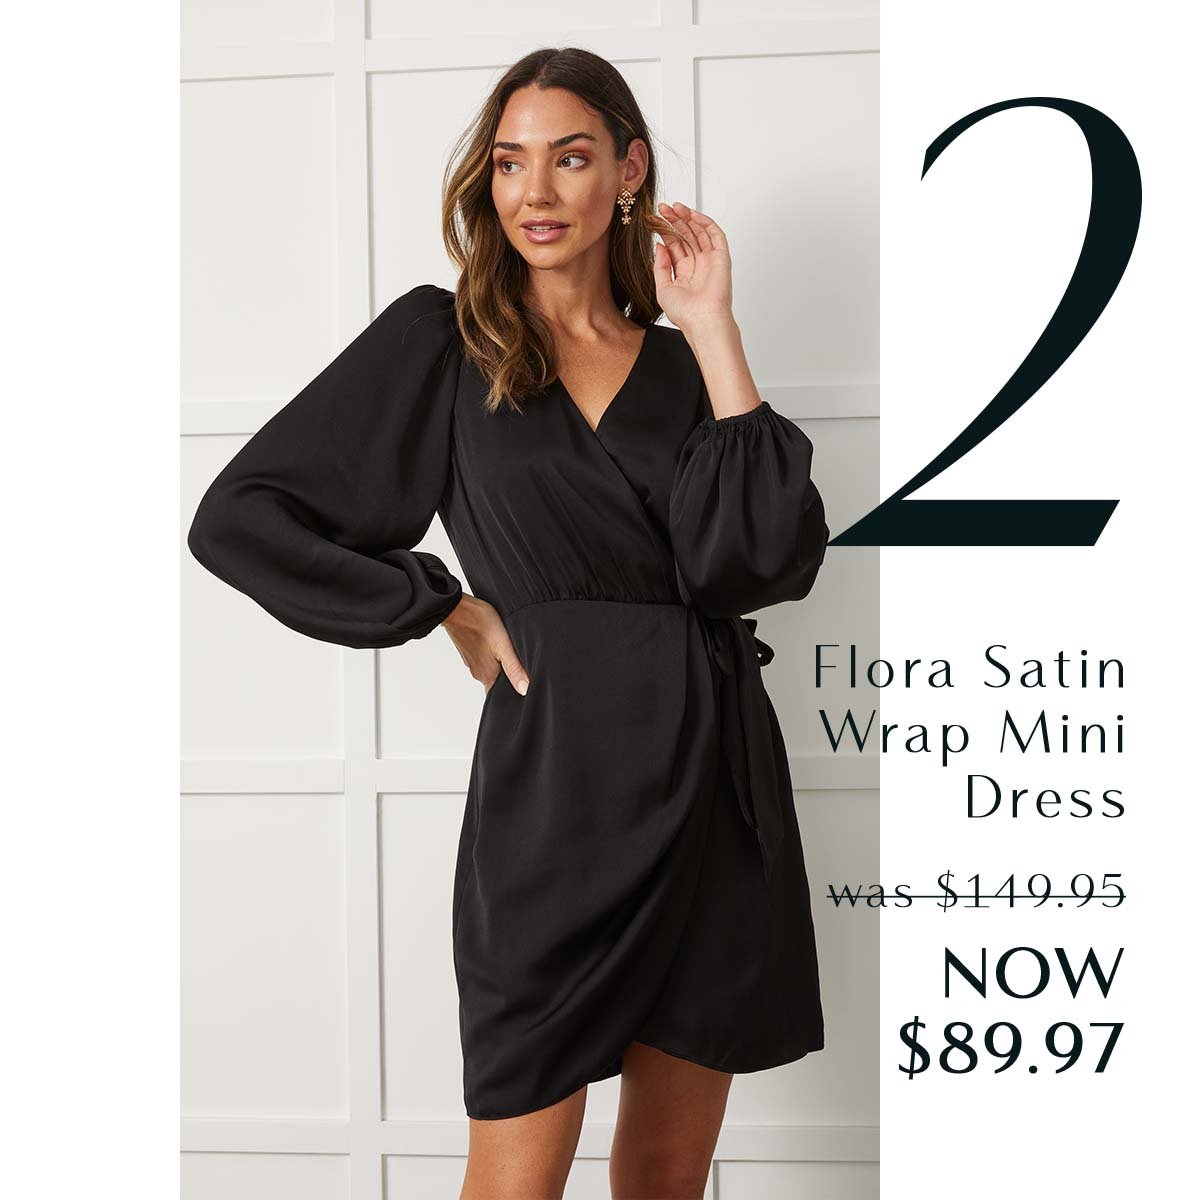 5. Flora Satin Wrap Mini Dress was $149.95 NOW $89.97